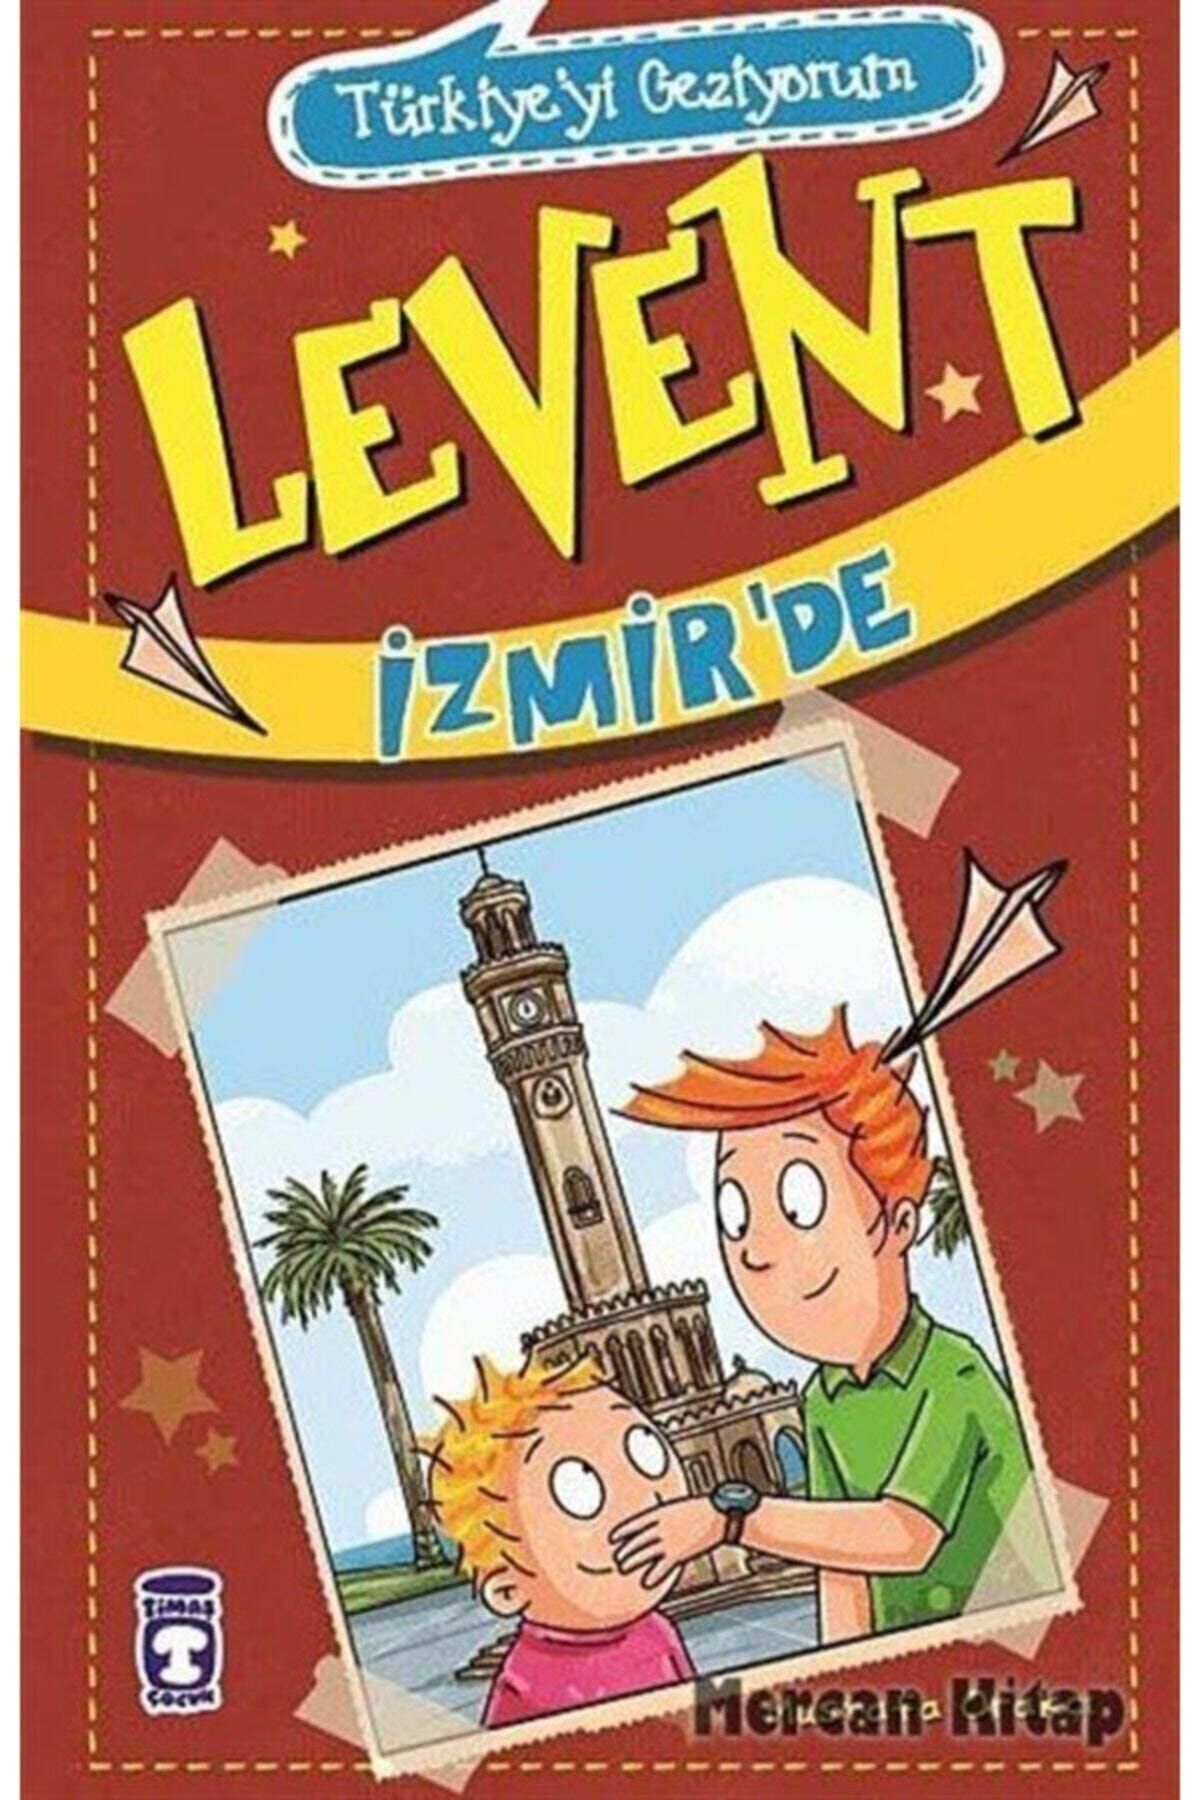 Türkiyeyi Geziyorum - Levent Izmir'de_0